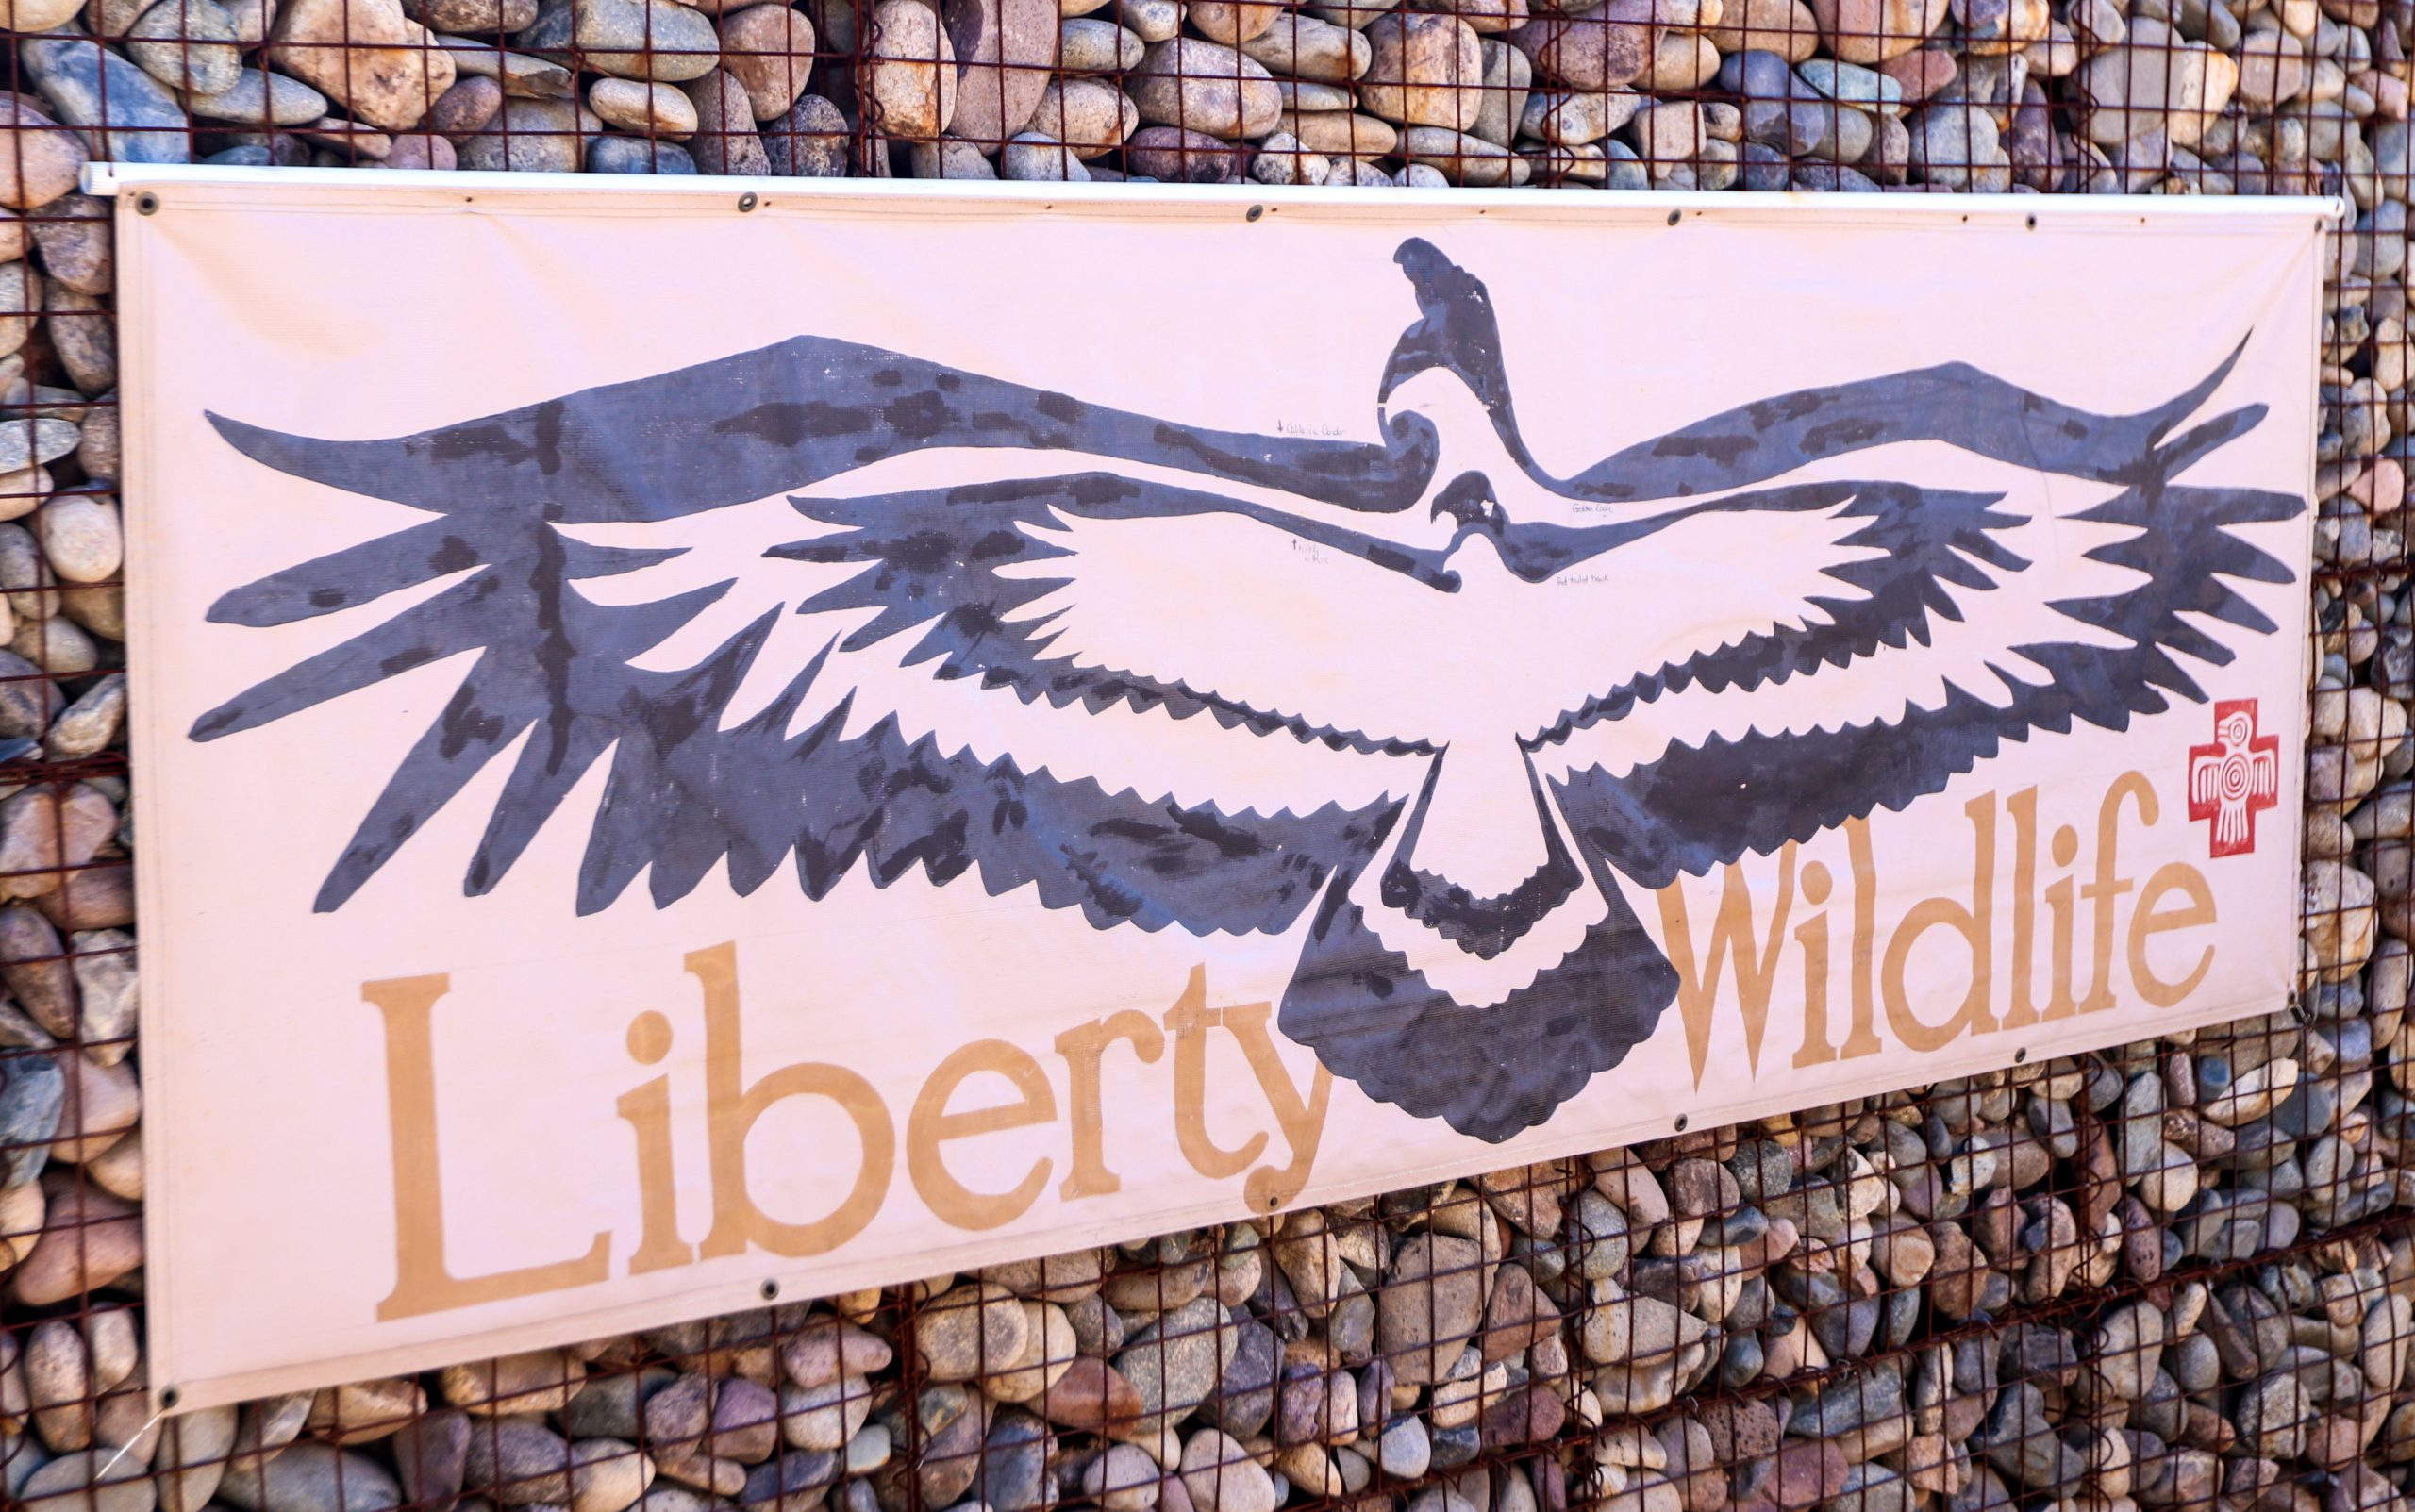 Liberty Wildlife